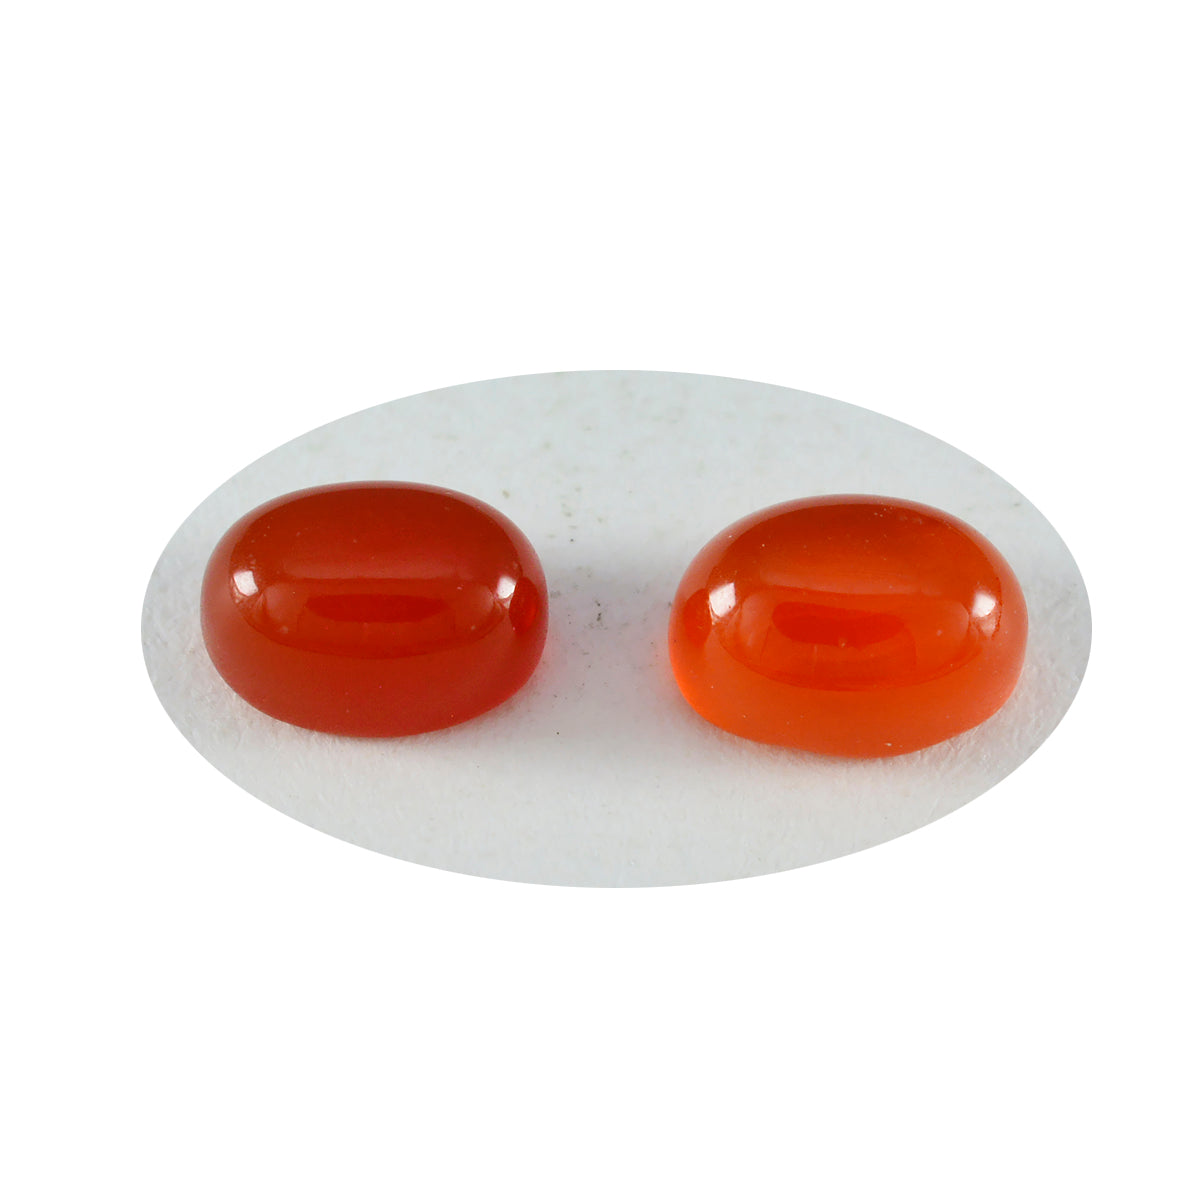 riyogems 1 st röd onyx cabochon 9x11 mm oval form a1 kvalitetsädelstenar